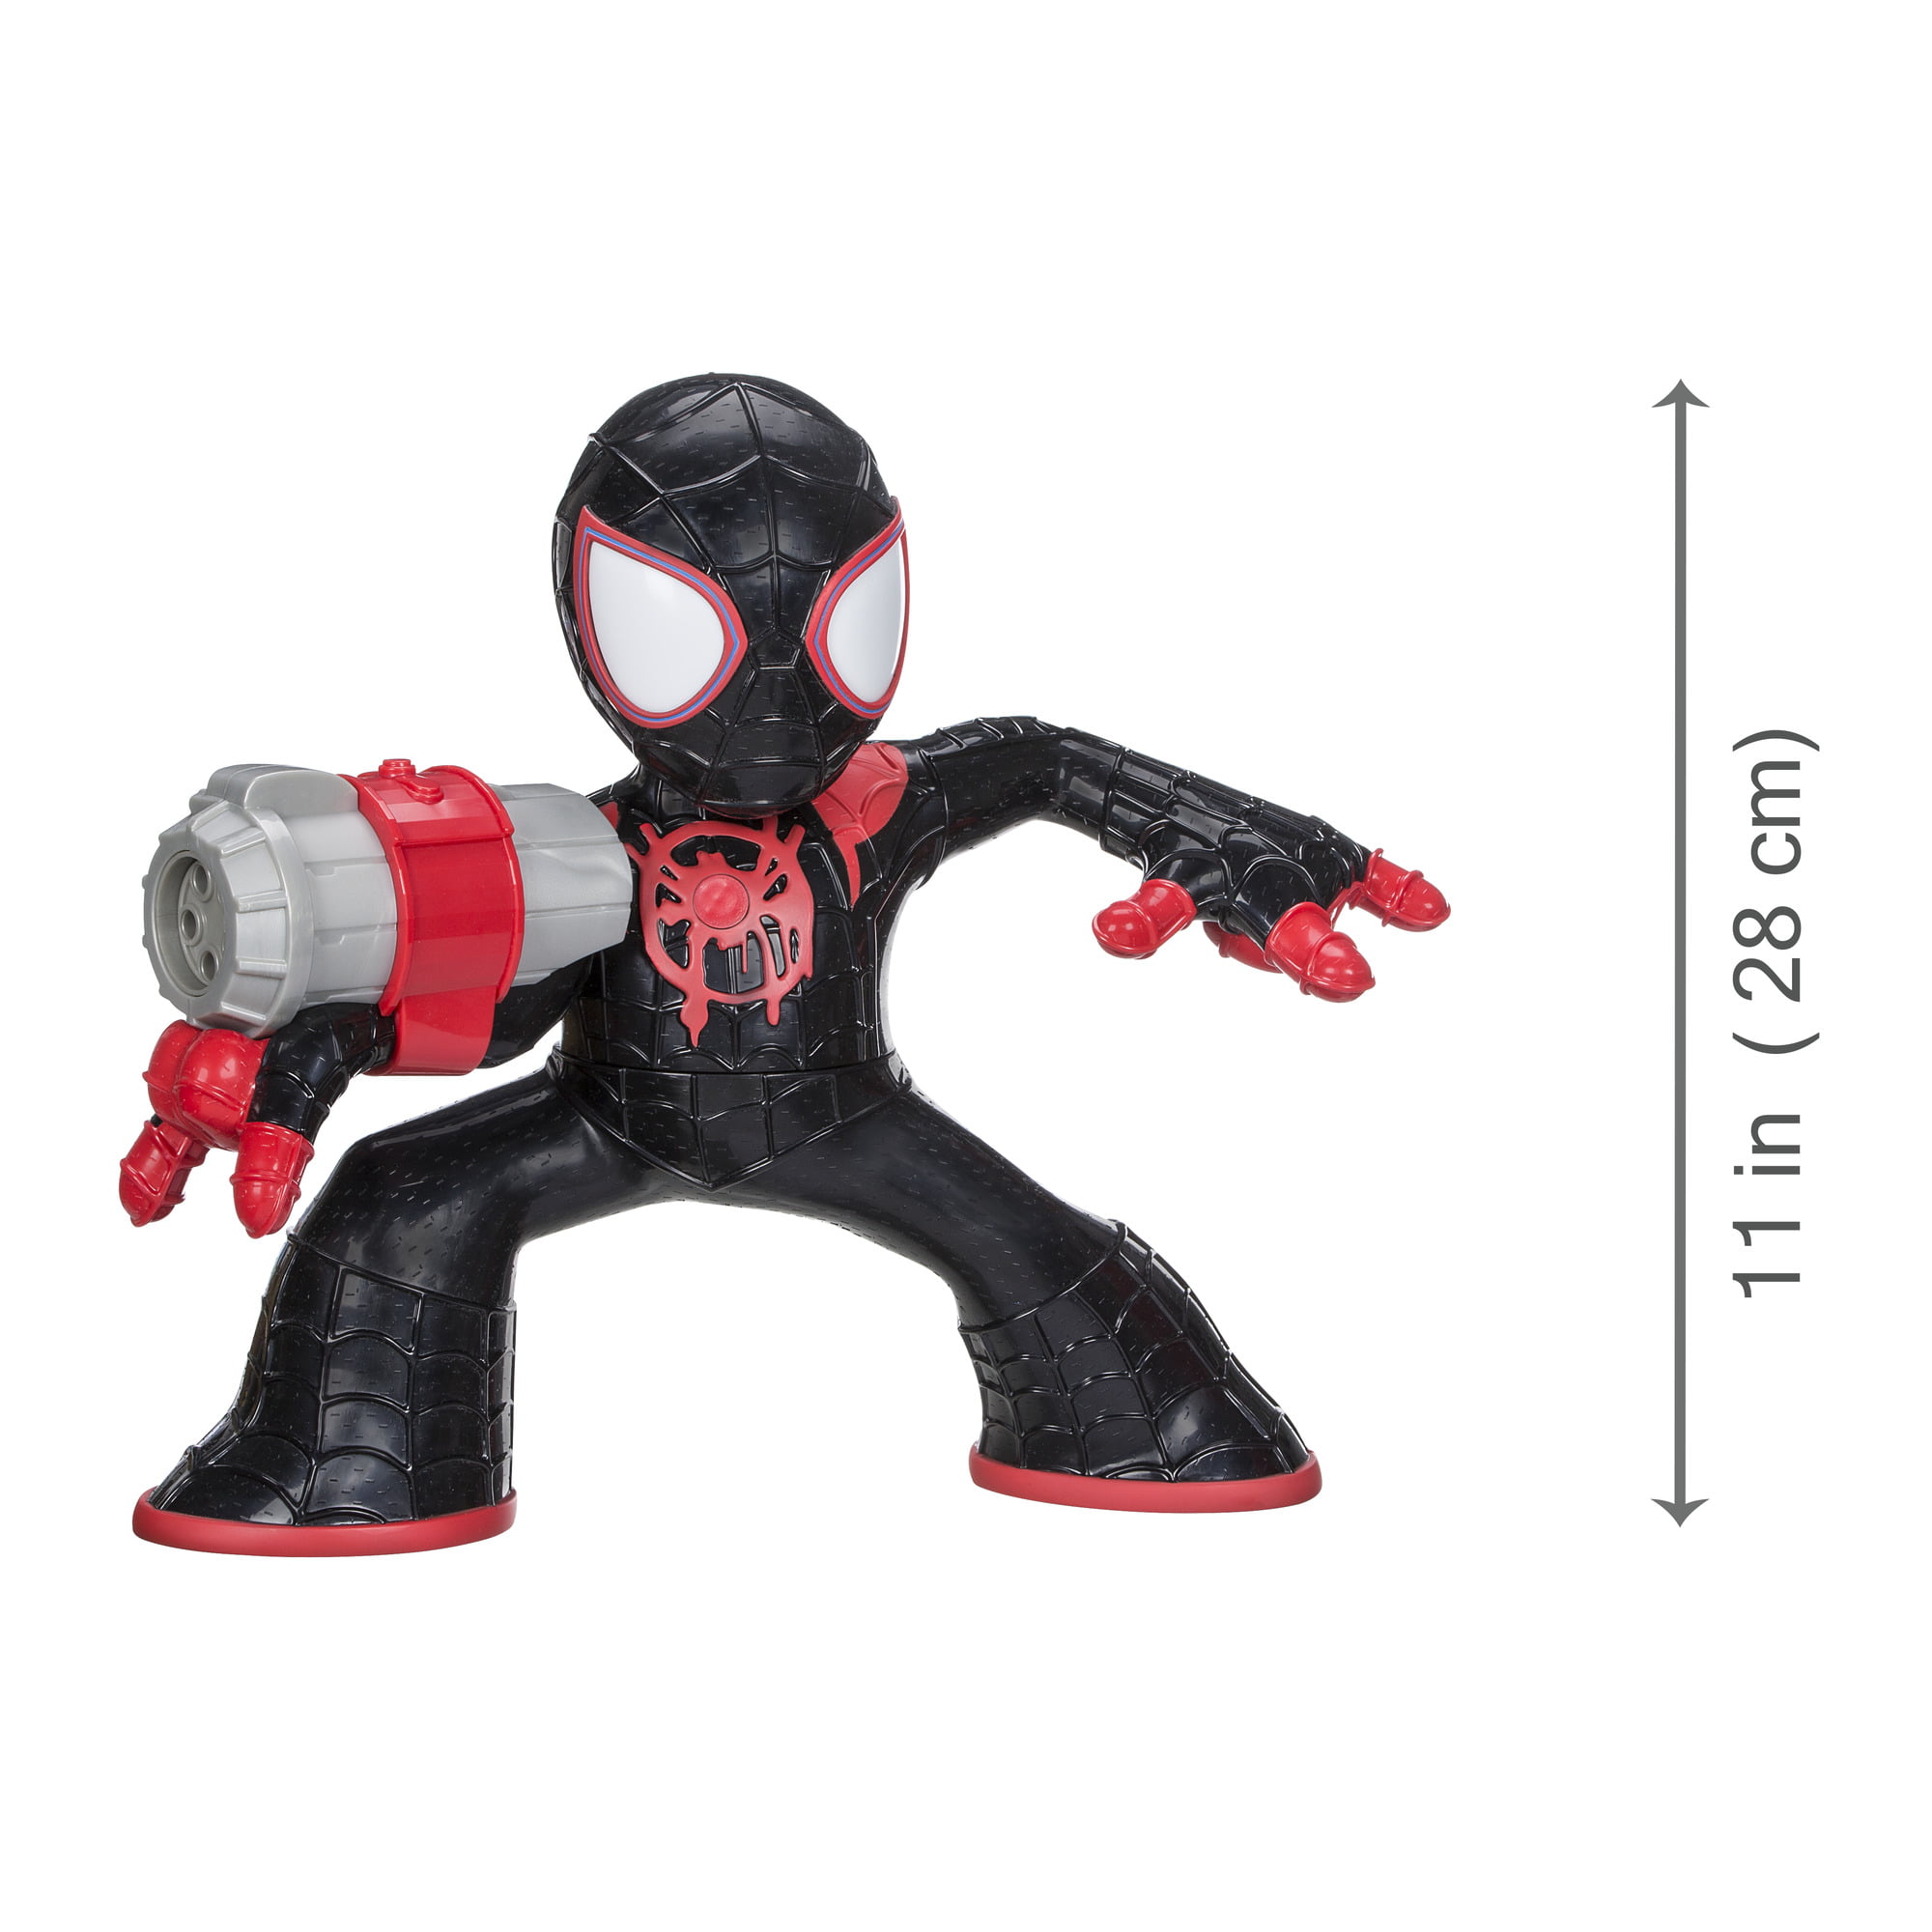 miles spider man toy